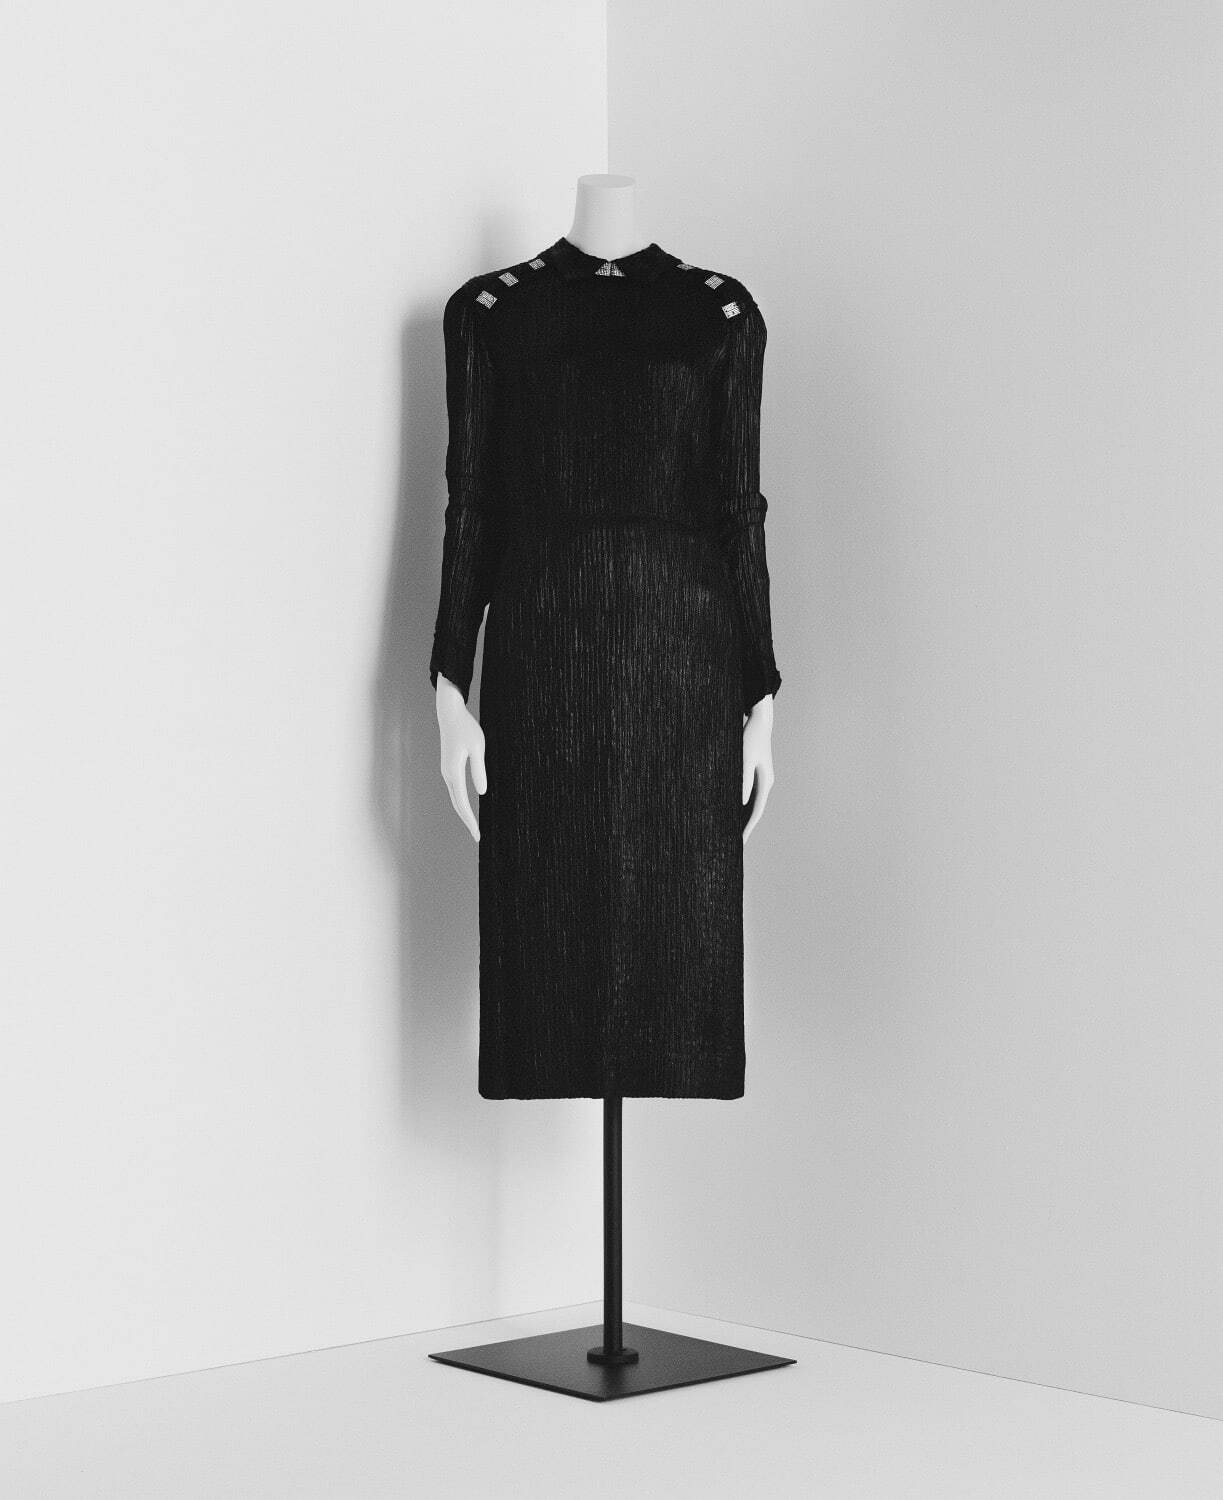 ガブリエル・シャネル ドレス
1936-37年秋冬 蝋引きしたレーヨンのクロッケ パリ、パトリモアンヌ・シャネル
©Julien T. Hamon